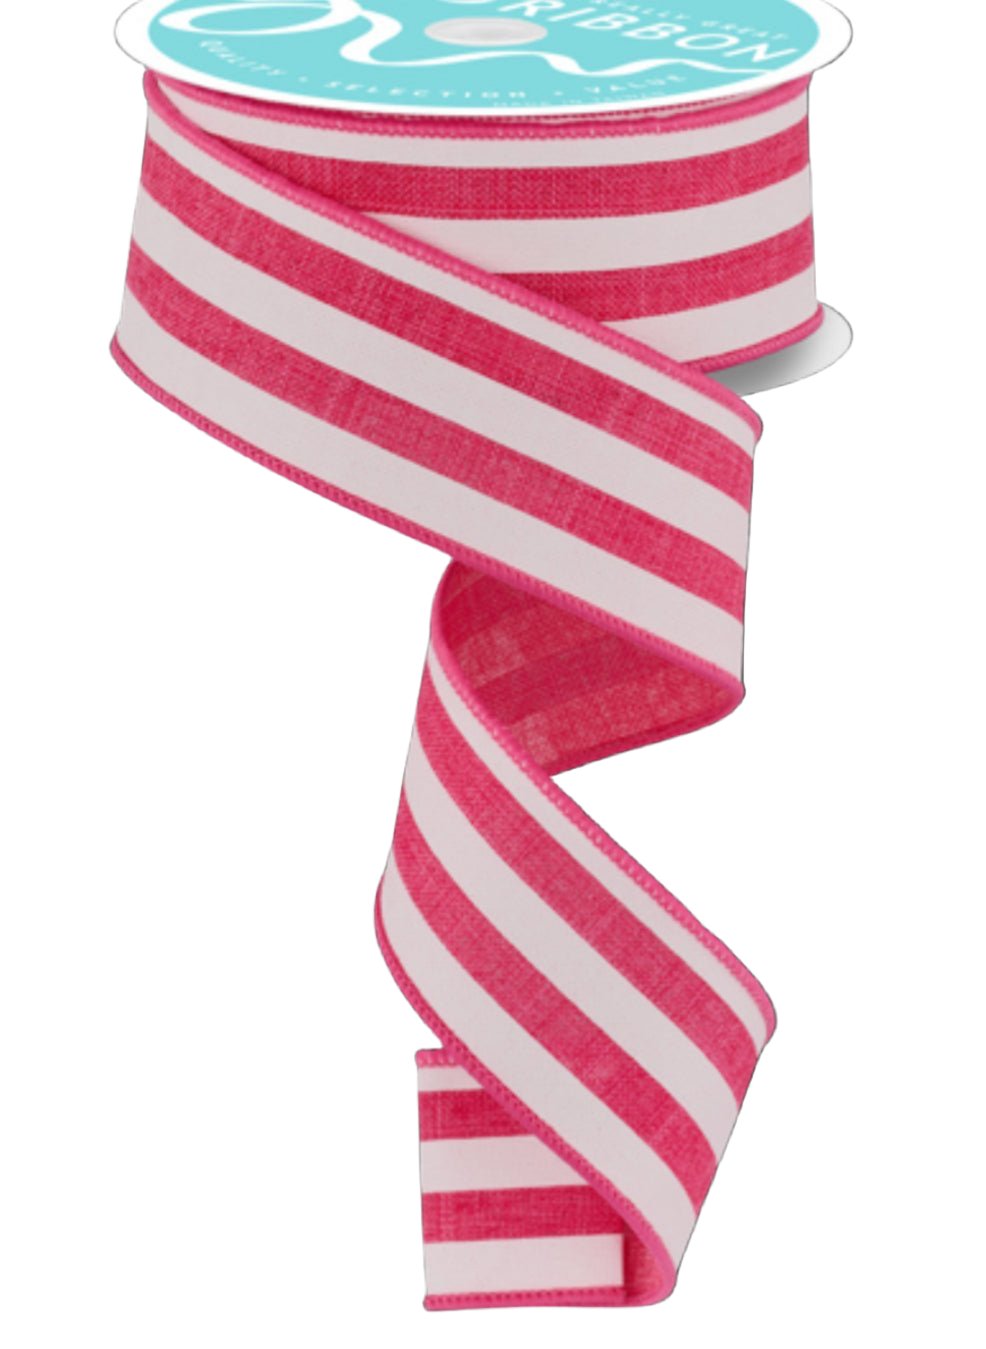 Hot pink Cabana stripe wired ribbon 1.5” - Greenery MarketWired ribbonRGC156211